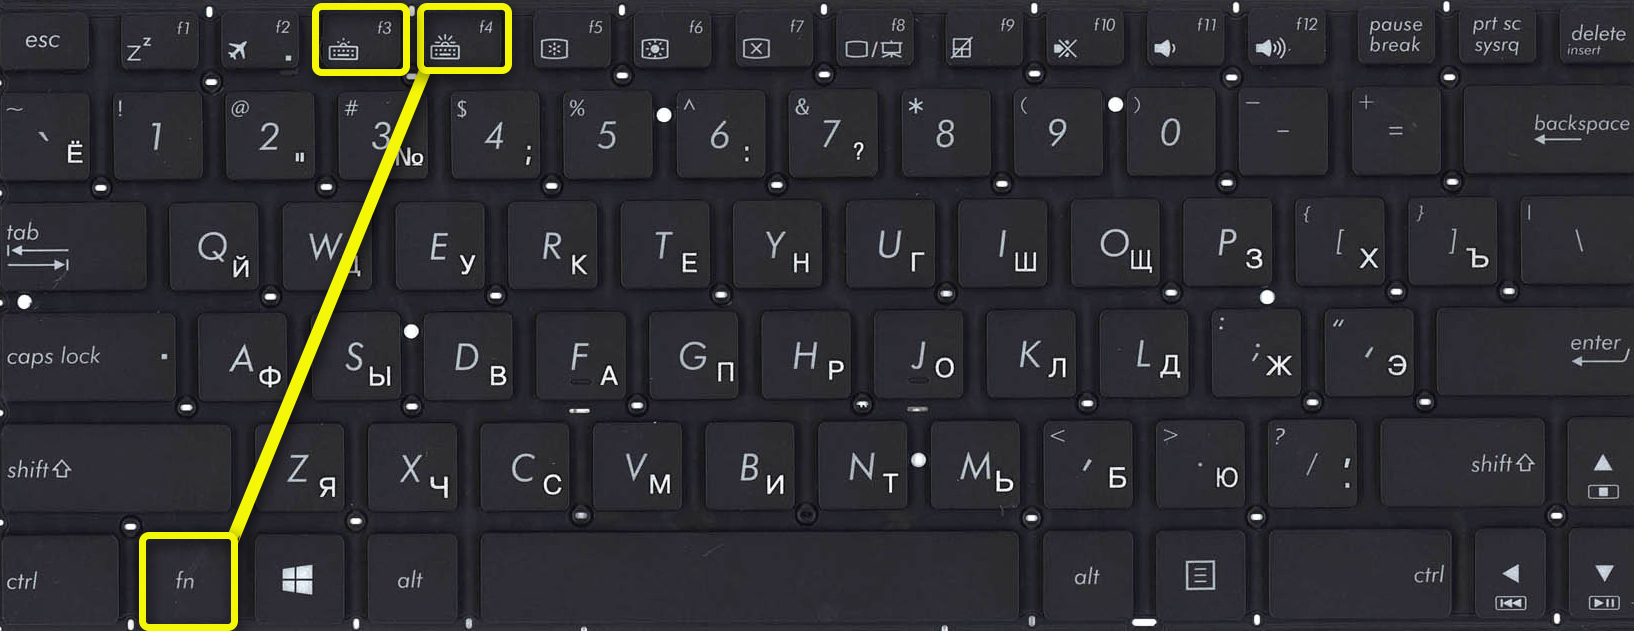 Часто работаете за компьютером в темноте? светодиоды под клавишами – это то, что нужно